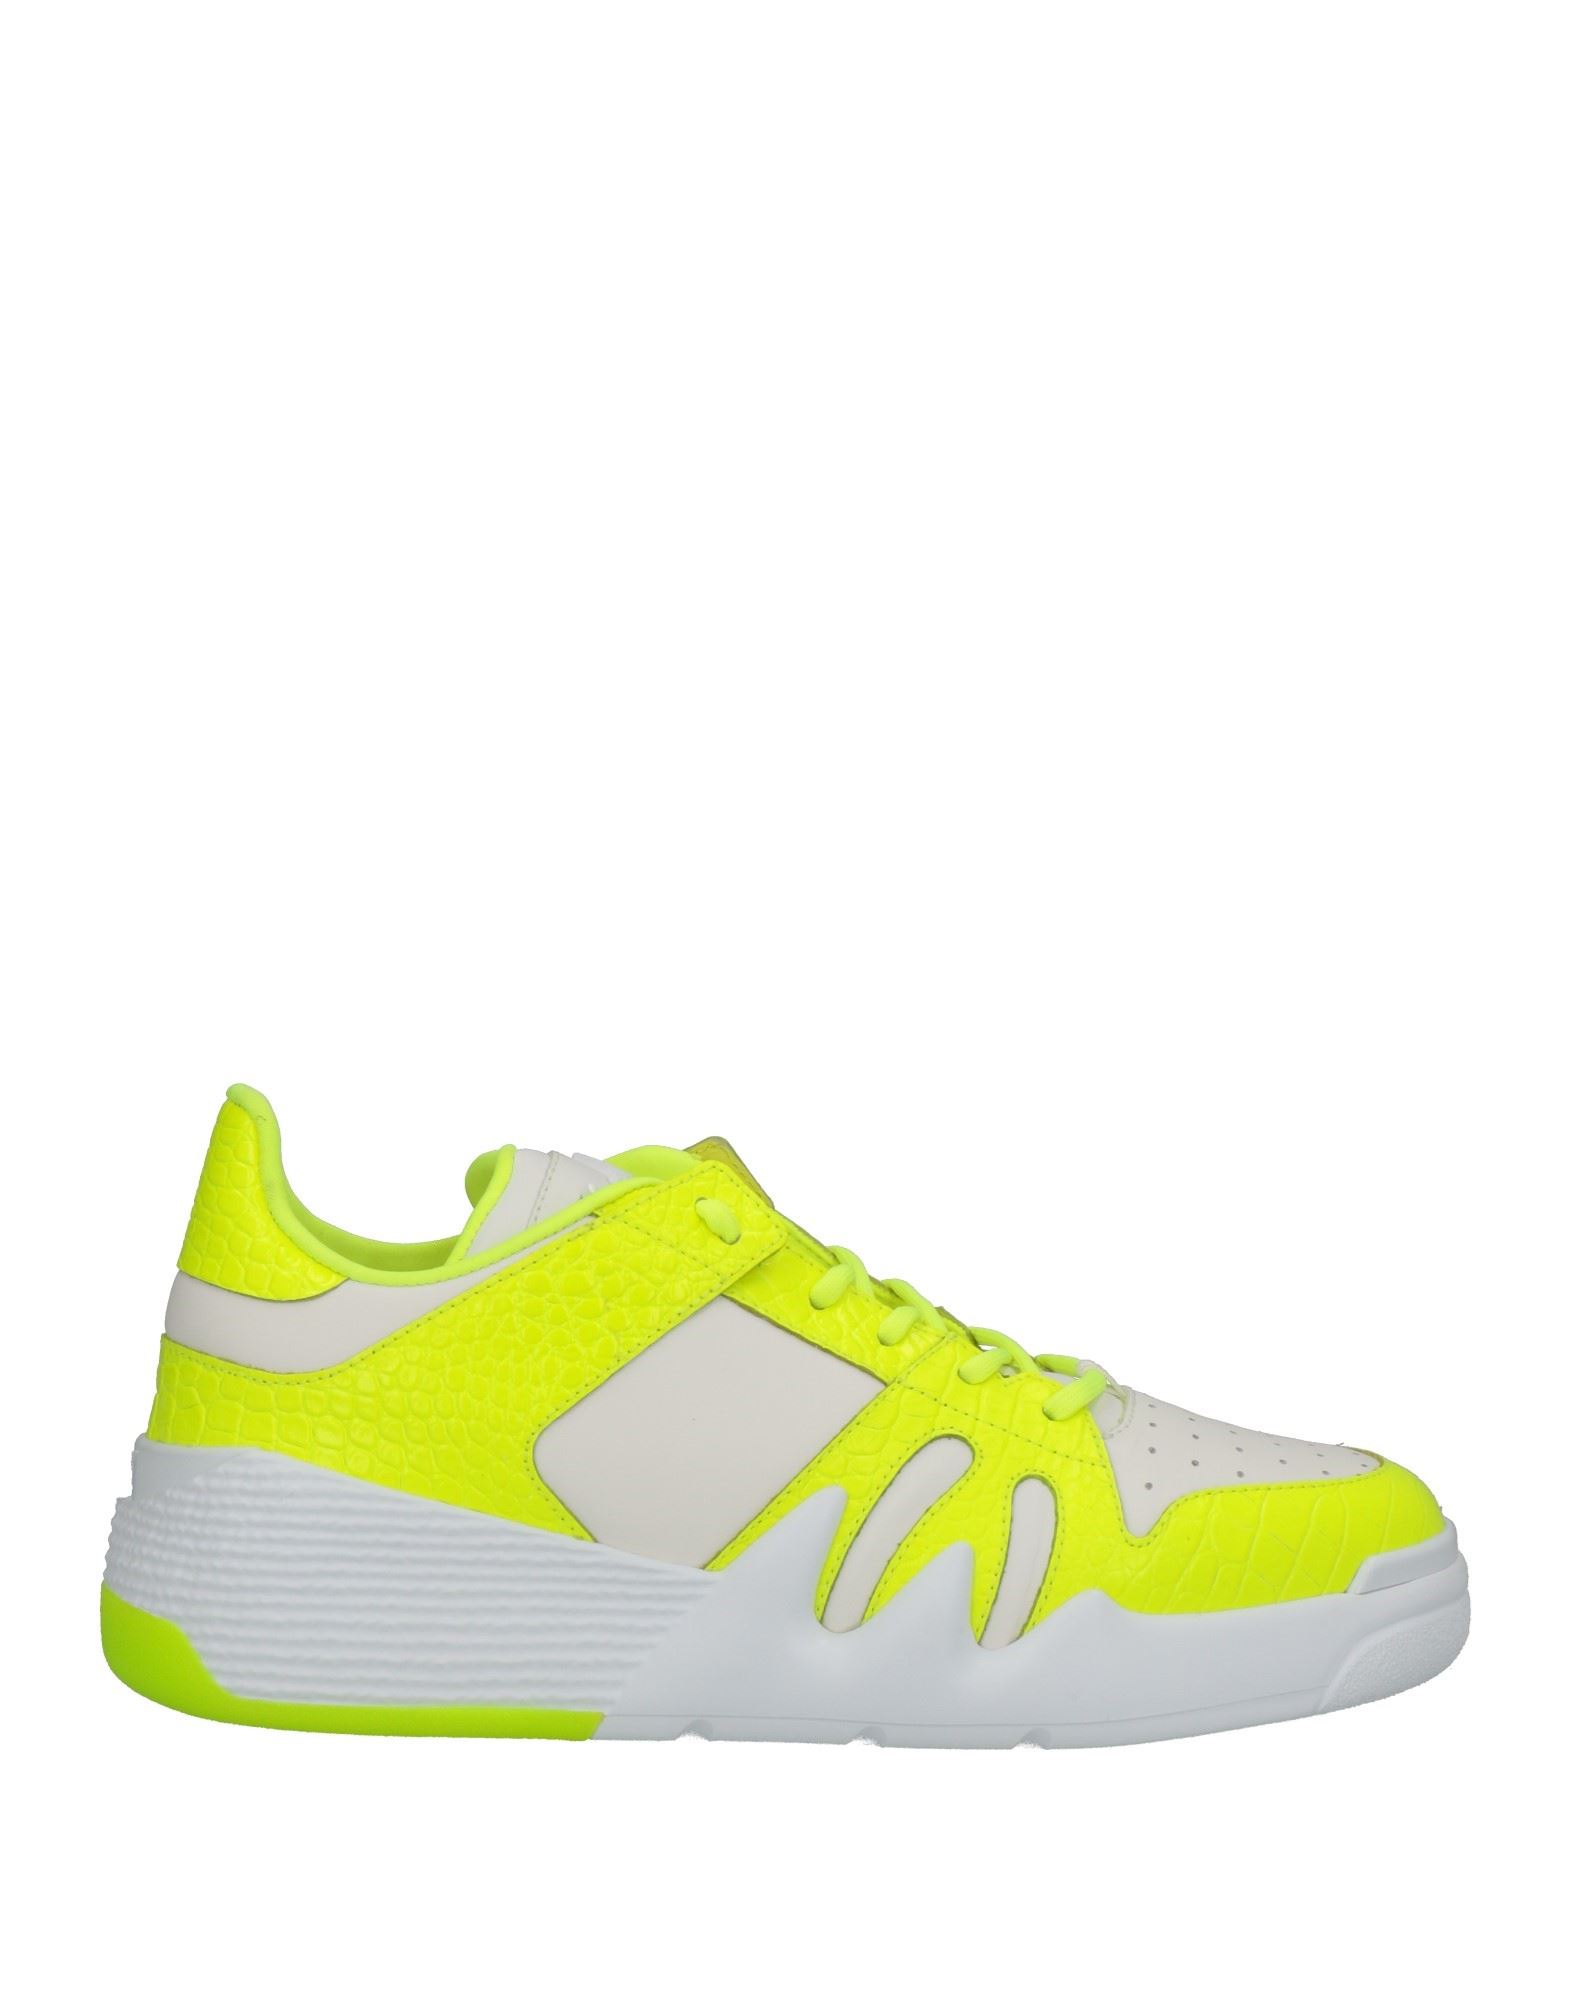 Giuseppe Zanotti Sneakers In Yellow